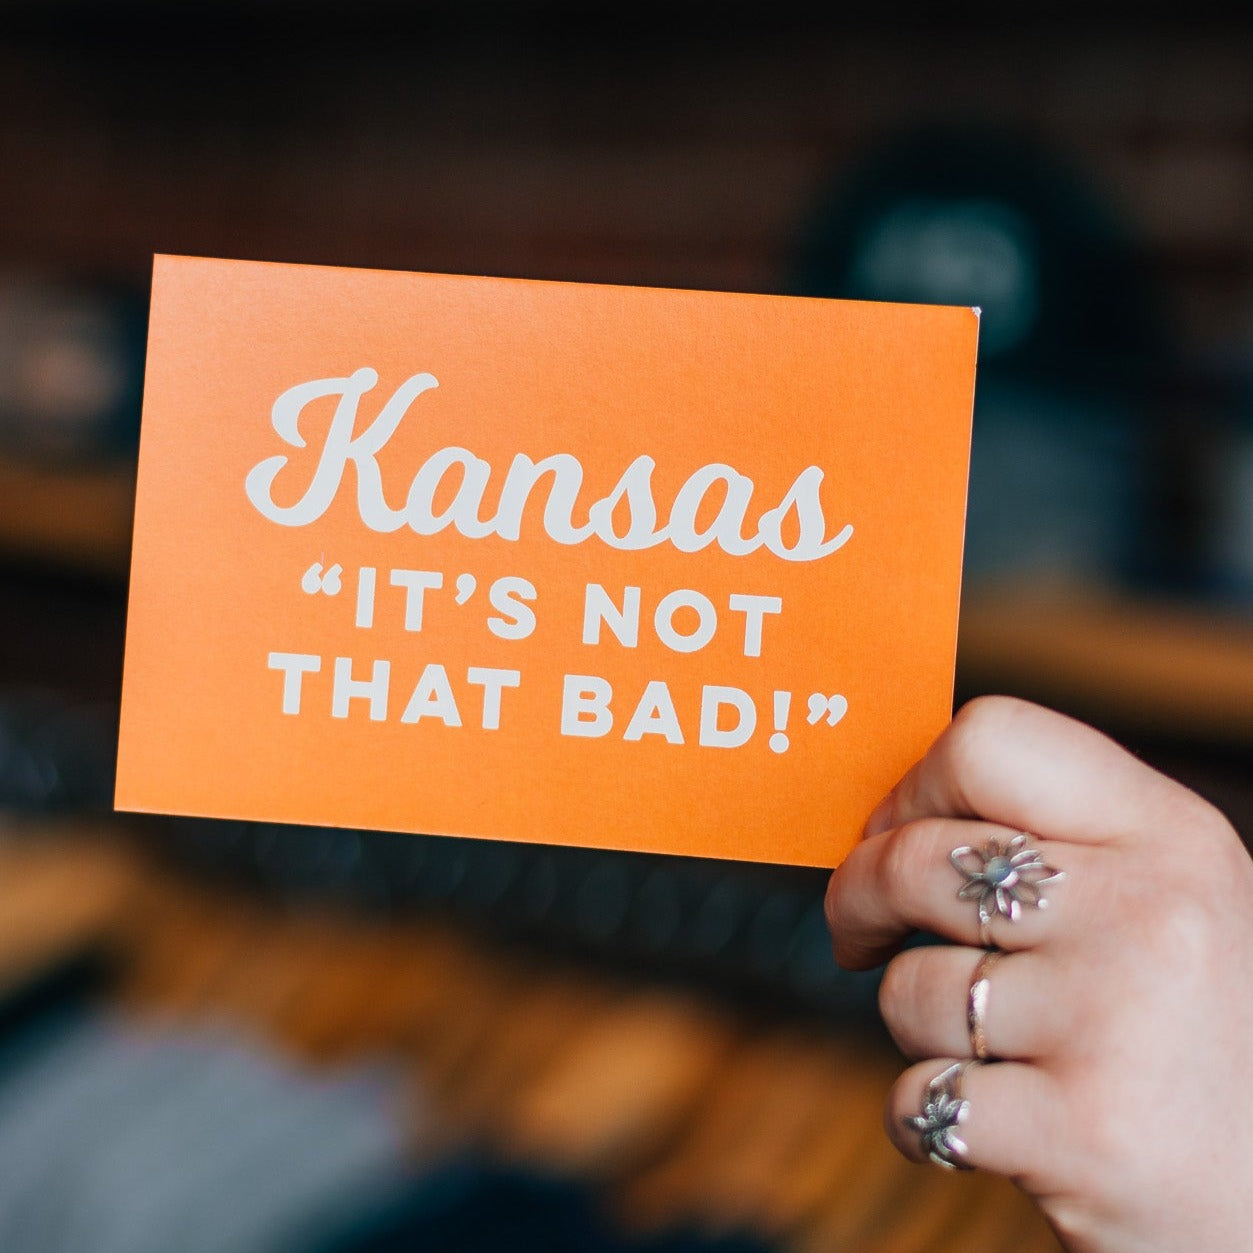 Kansas "It's Not That Bad!" Postcard